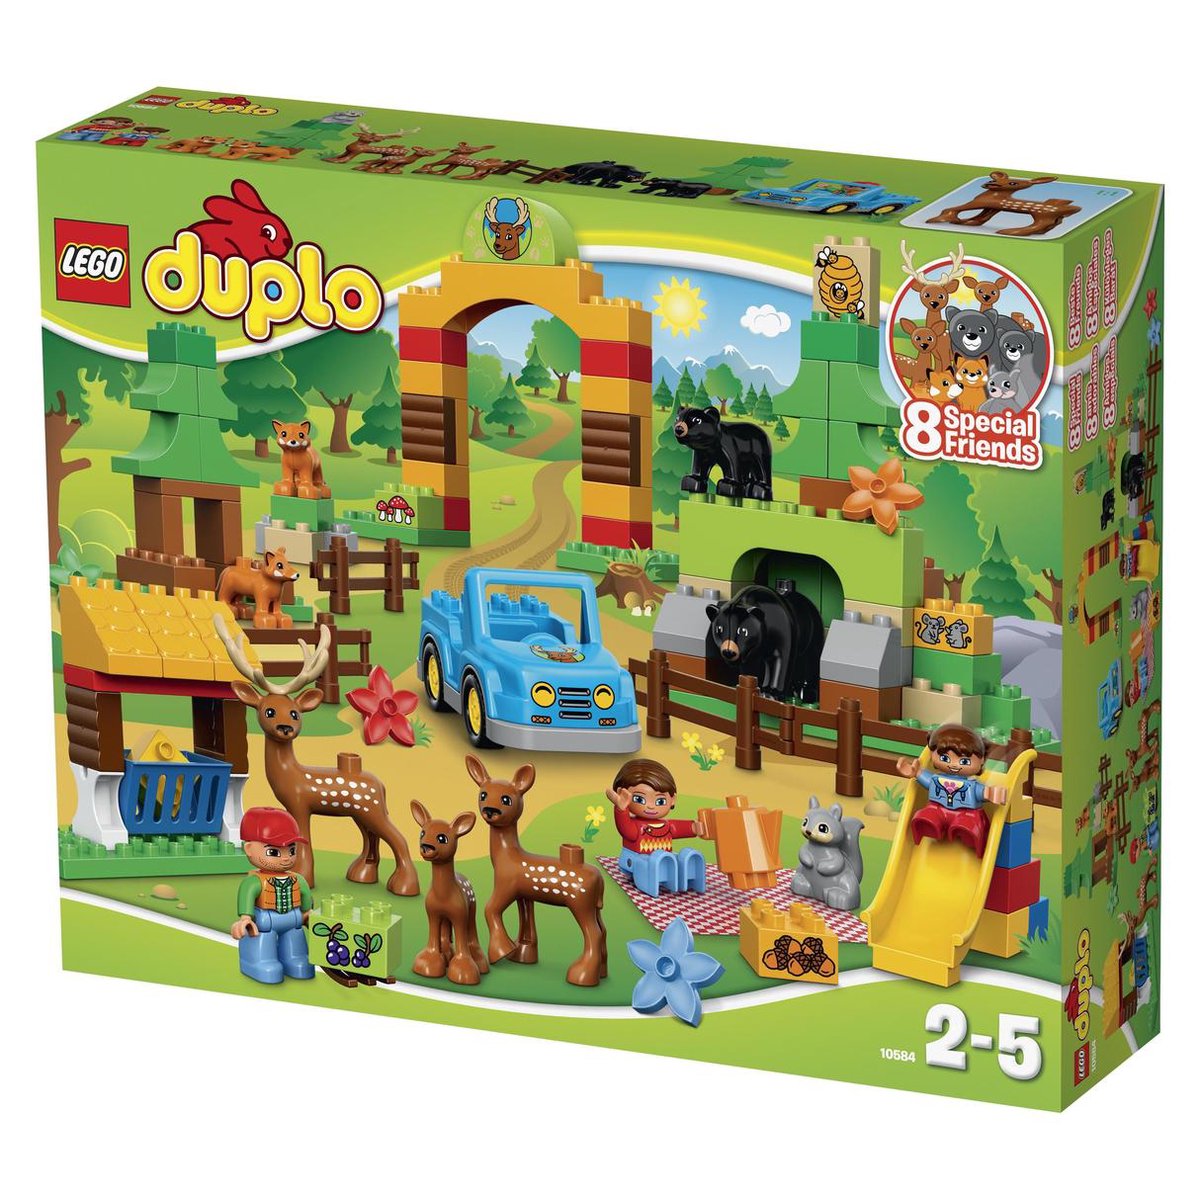 LEGO DUPLO Het Grote Bos - 10584 | bol